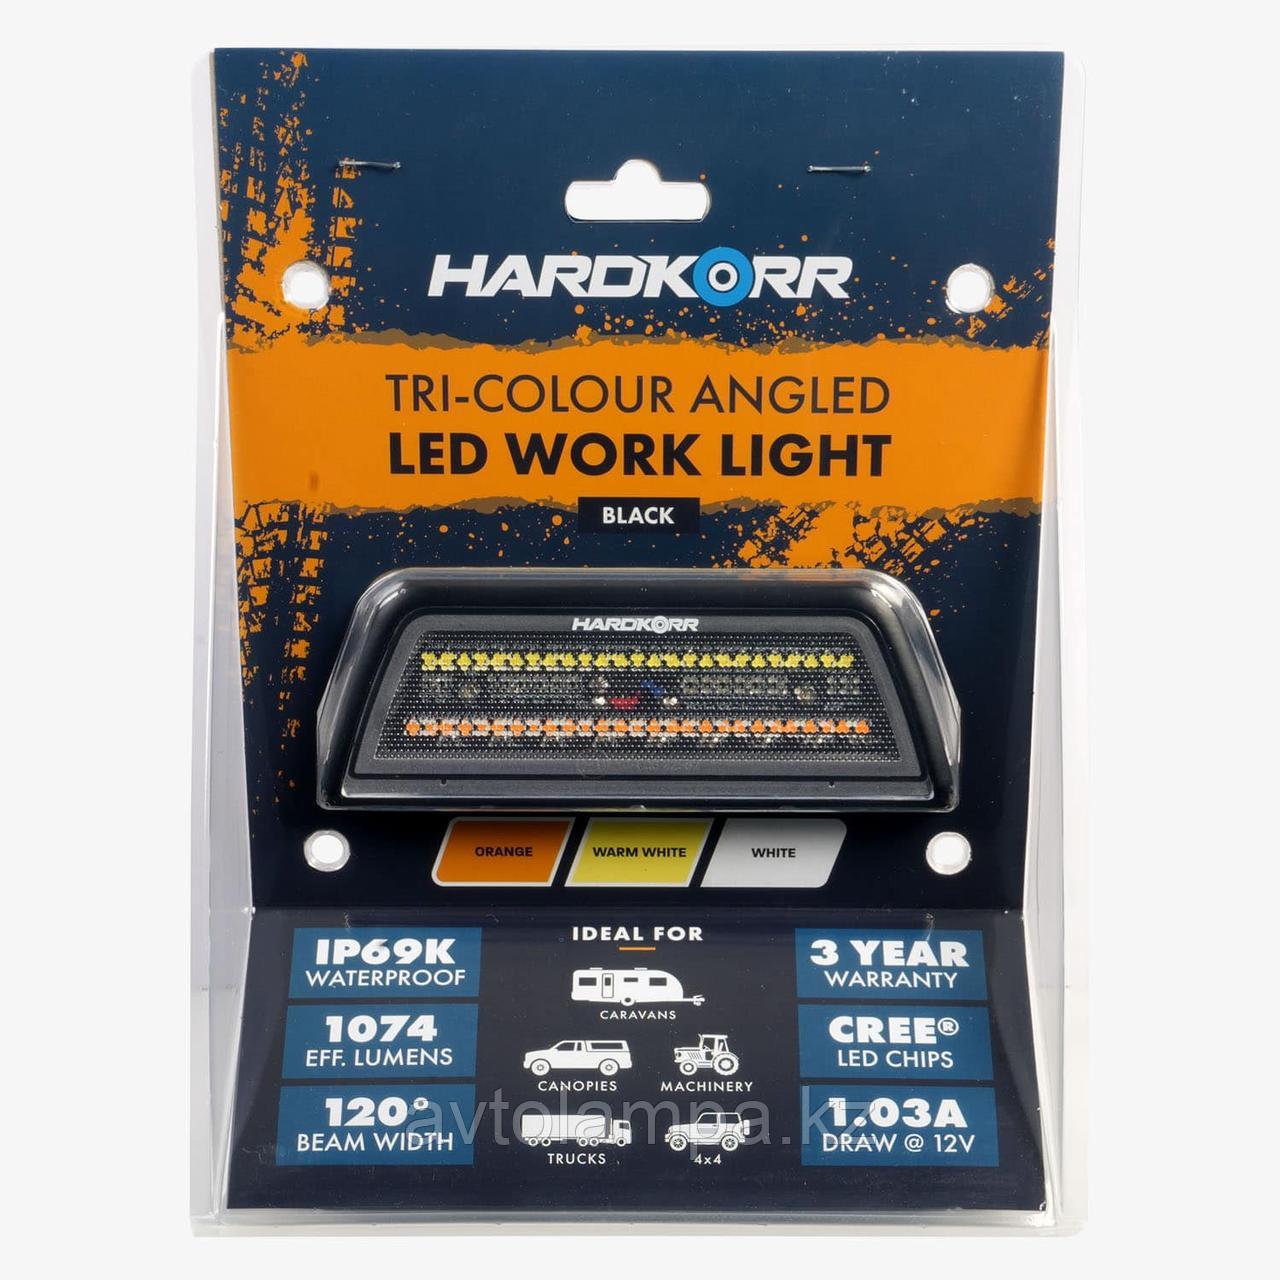 Hardkorr XDW45 фара для освещения маркизы, 120 градусов, OSRAM LED, Work Light, Австралия рабочее освещение, фото 1